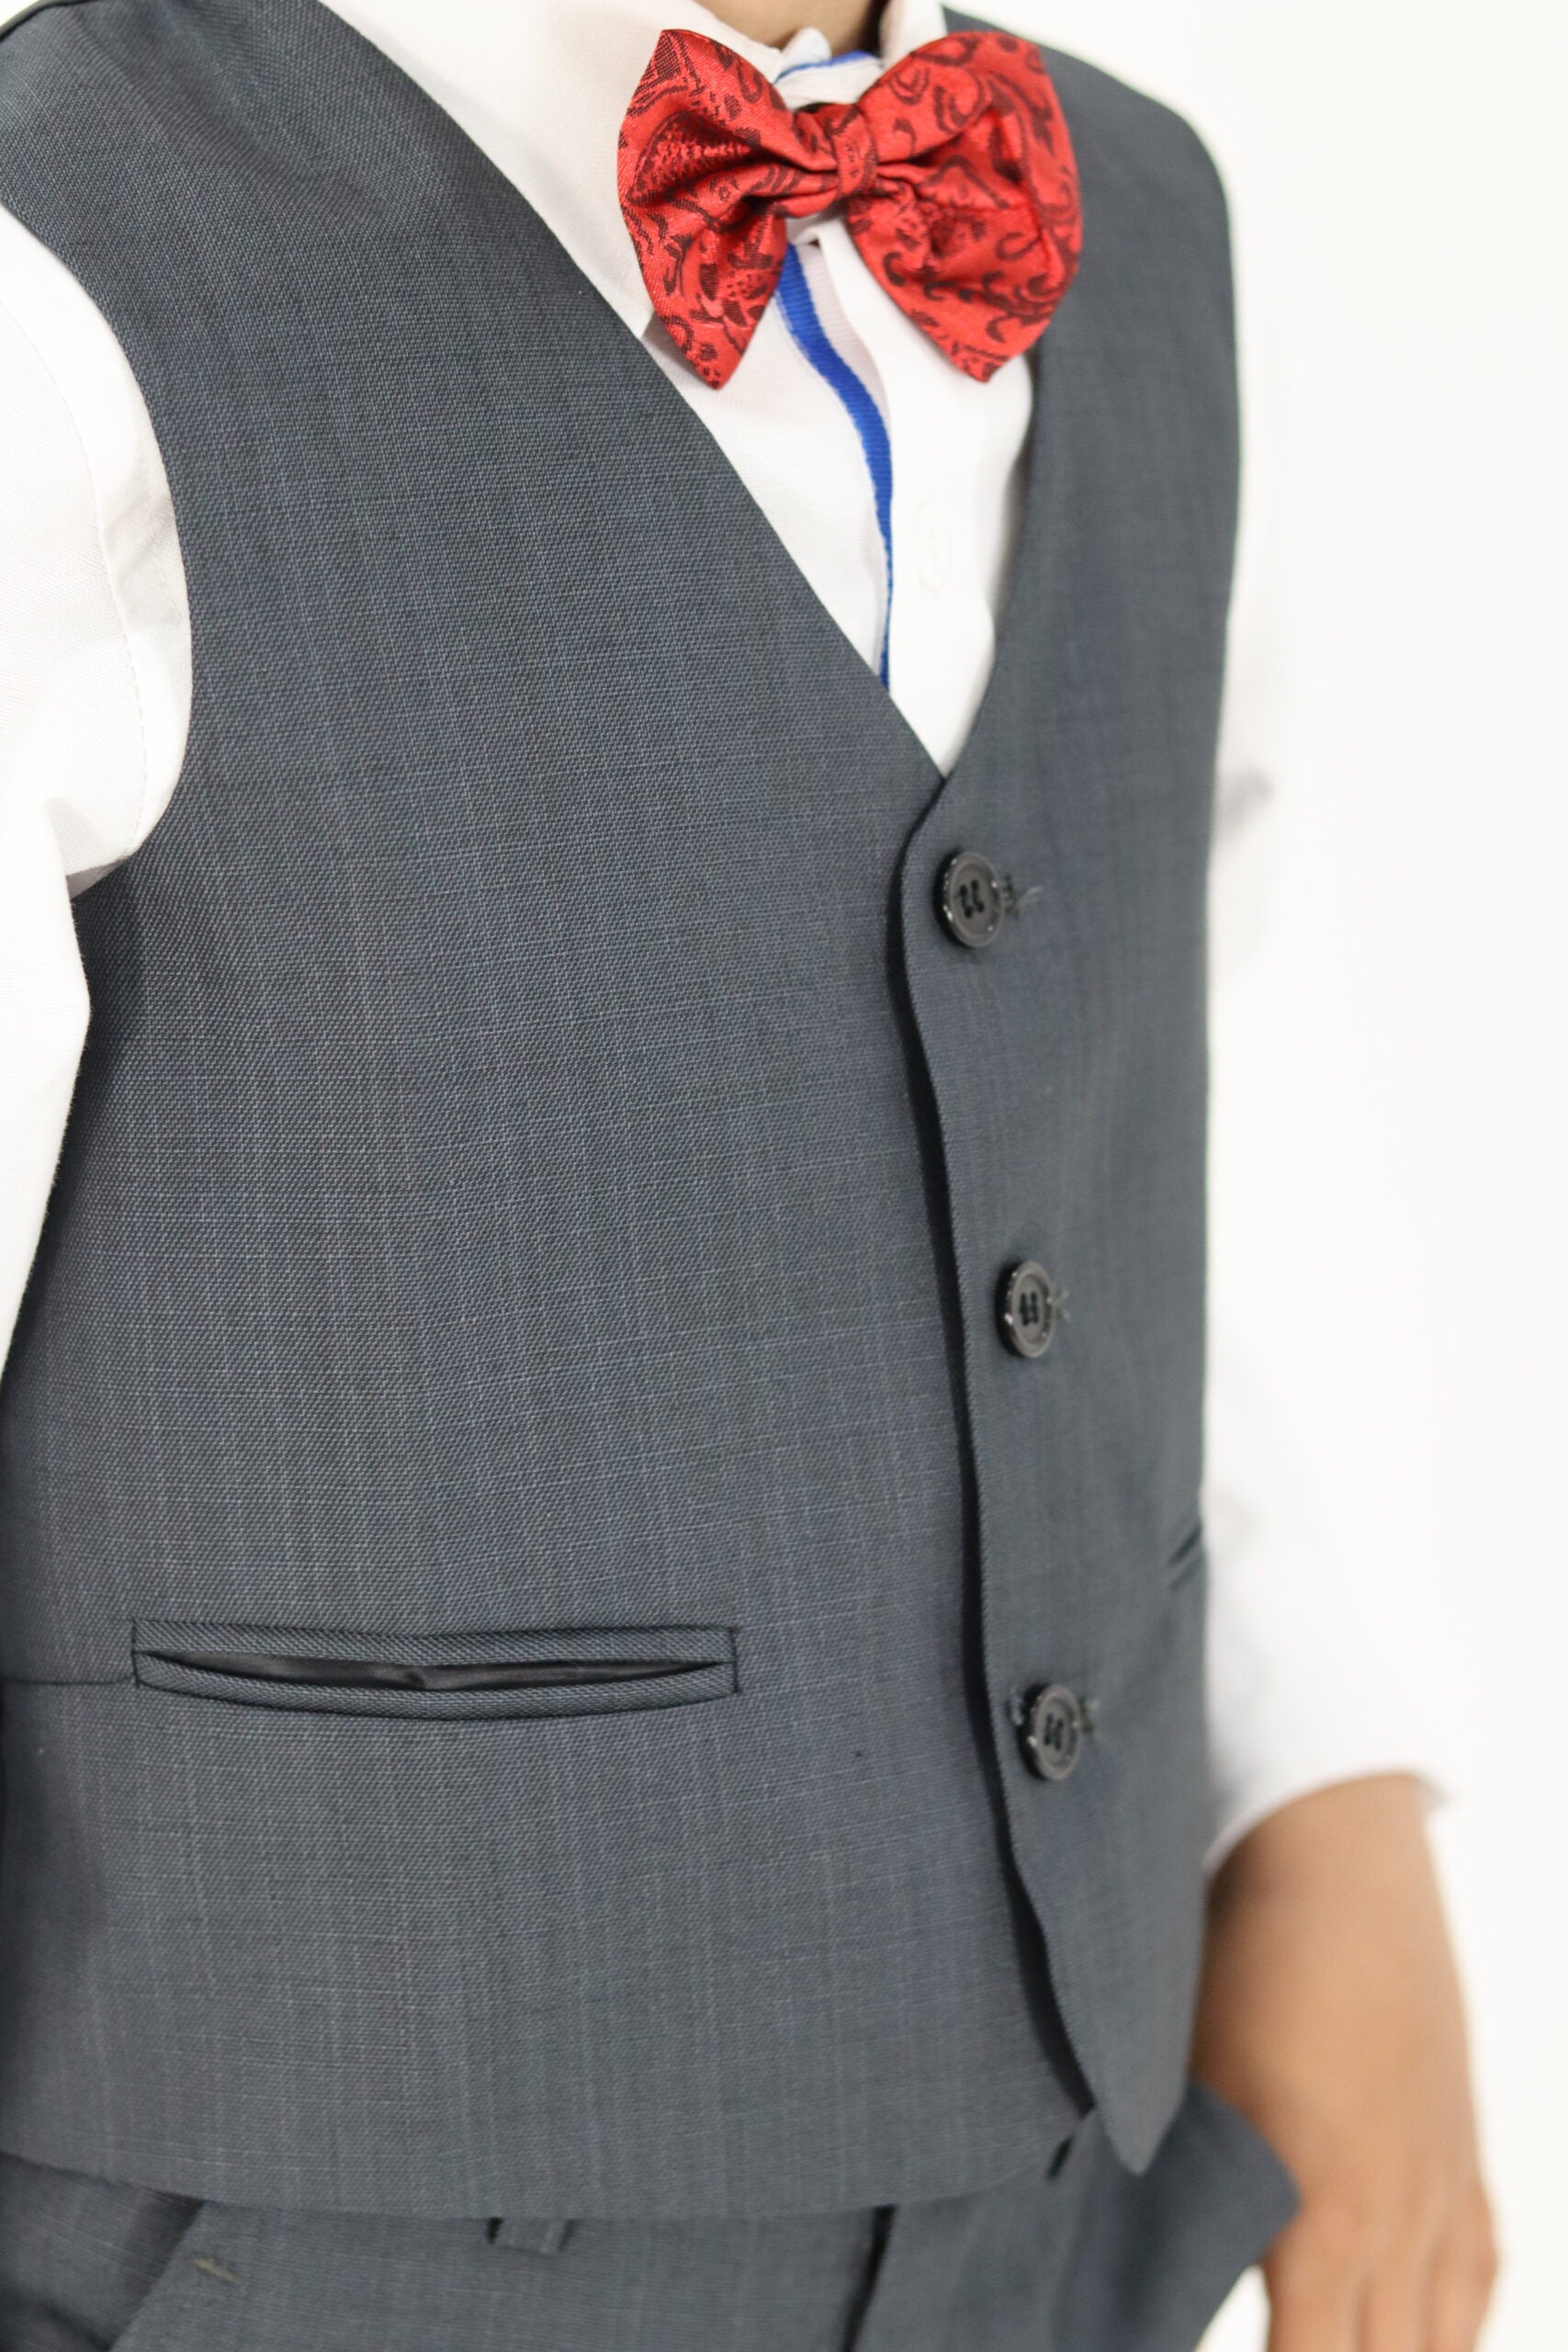 Boy Slim Fit Grey Suit 3Pc Set